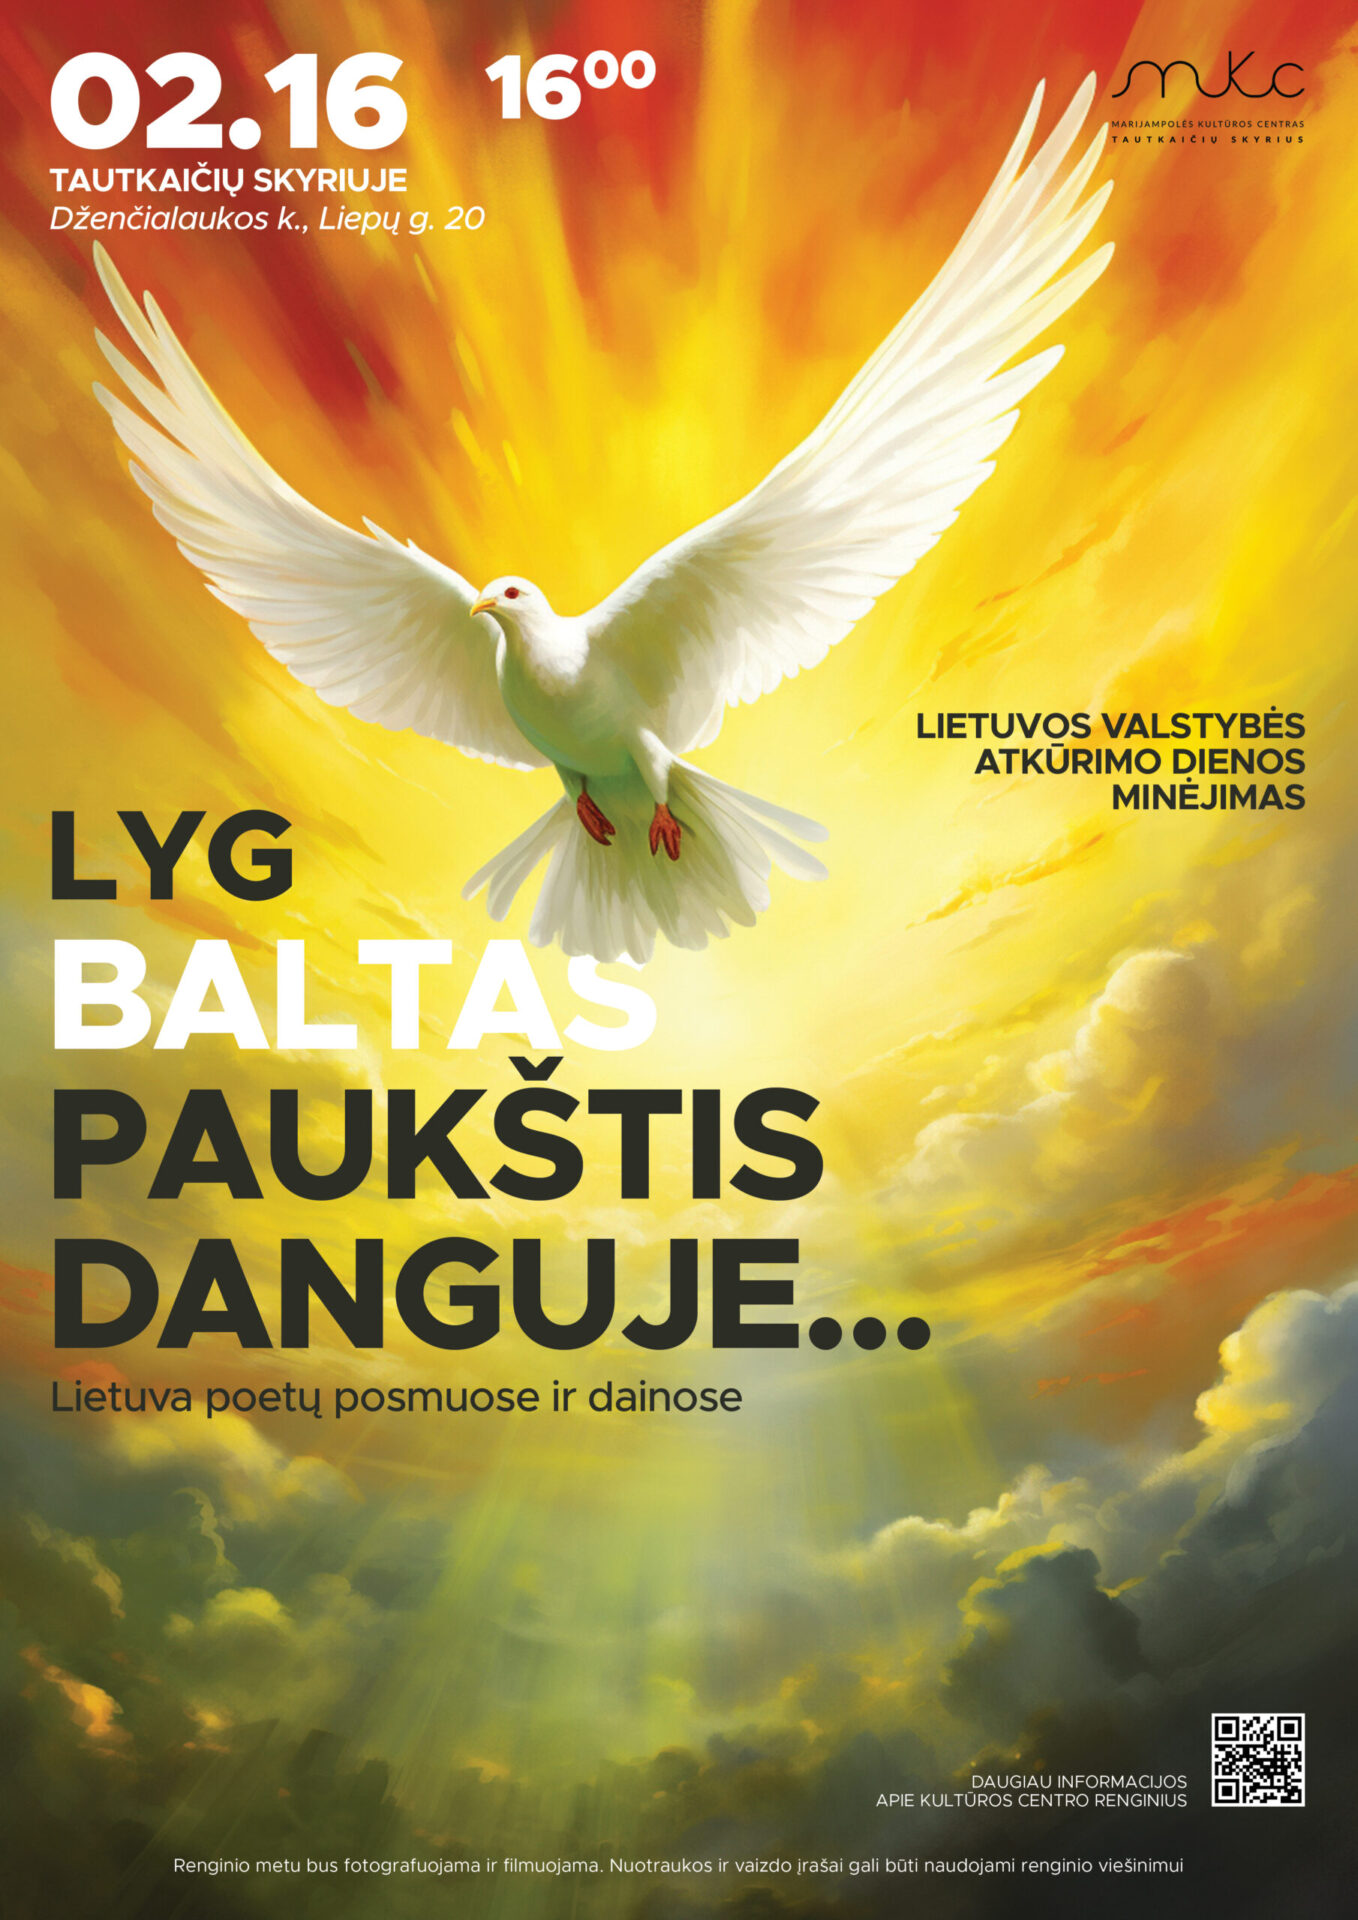 Lietuvos valstybės atkūrimo dienos minėjimas „Lyg paukštis danguje” | TAUTKAIČIAI